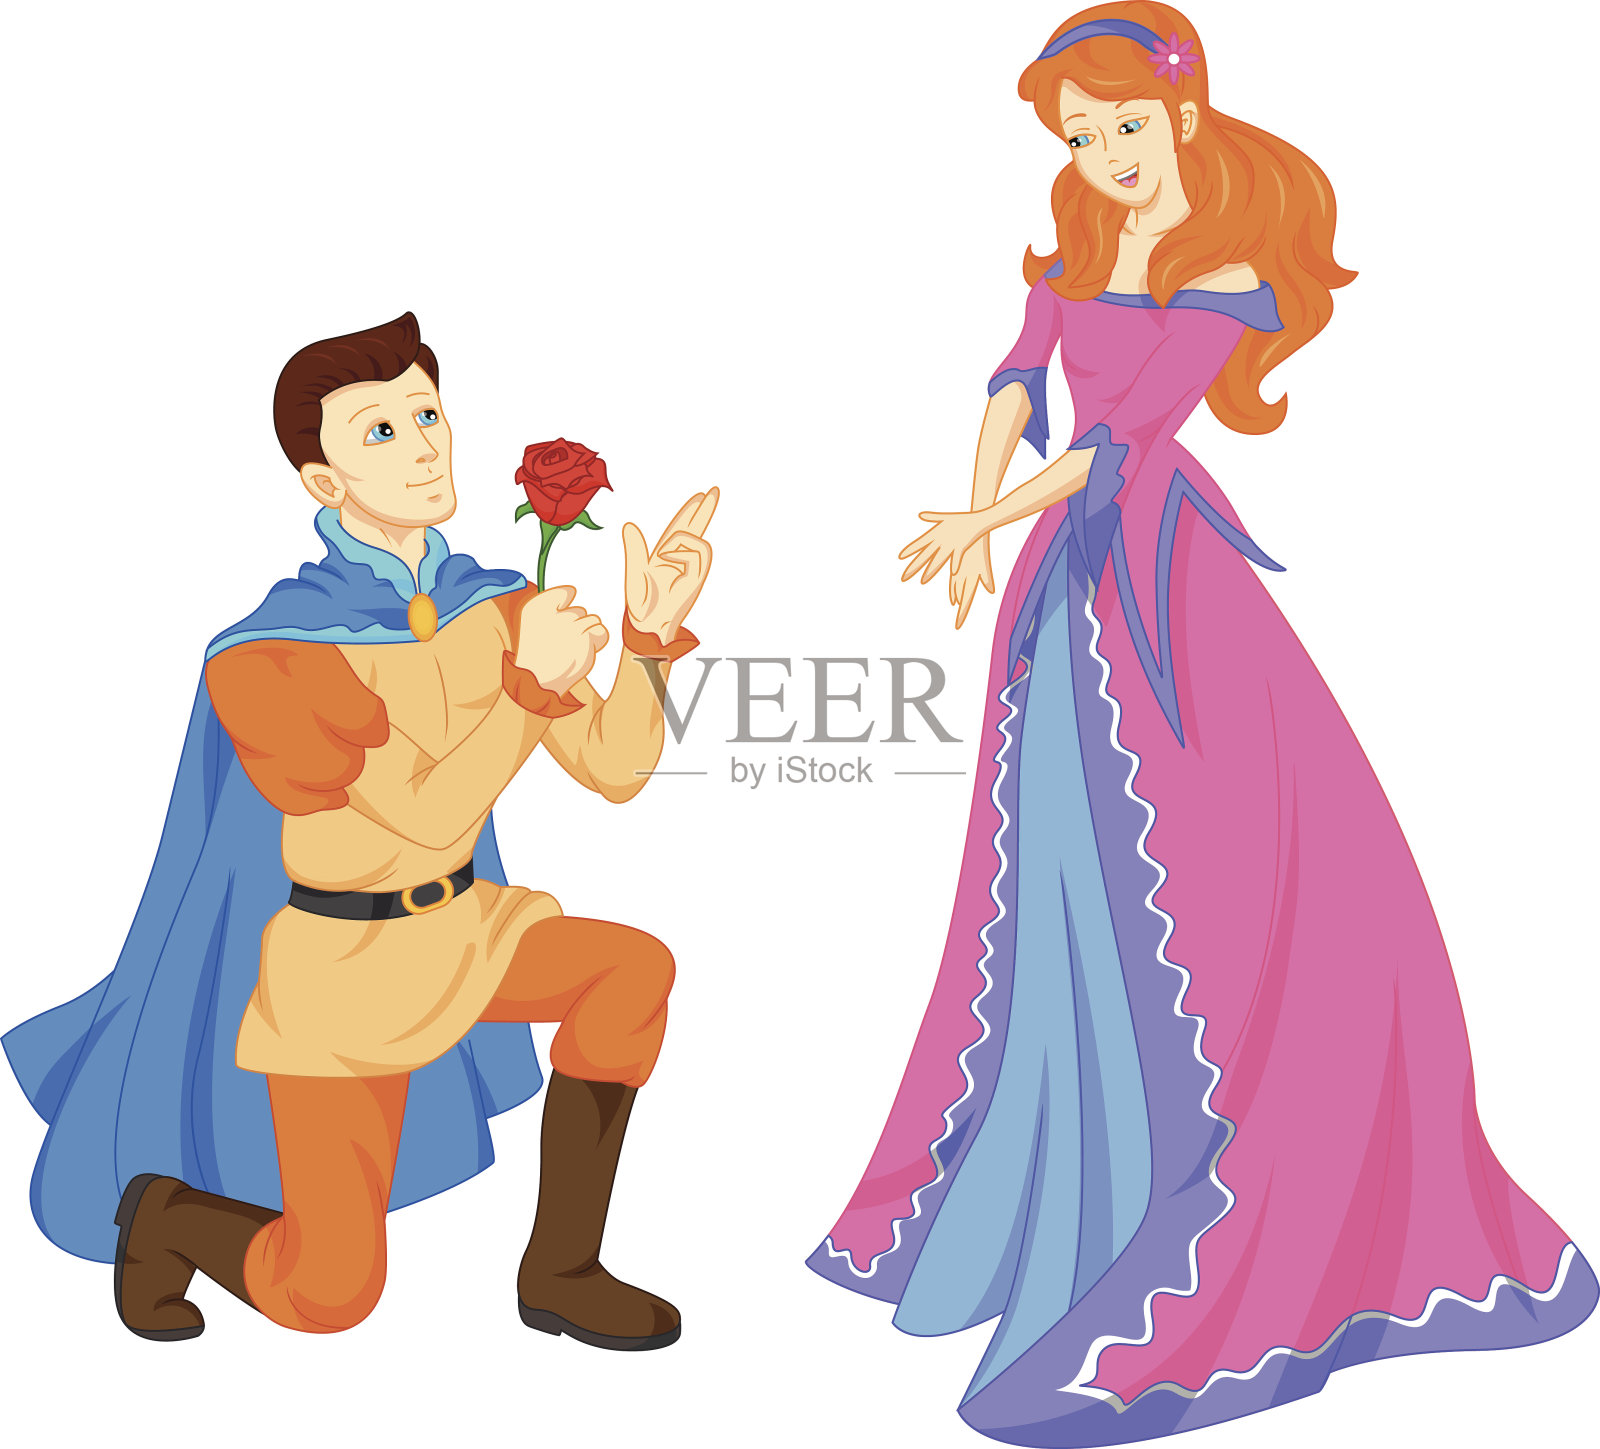 迷人的王子和美丽的公主插画图片素材